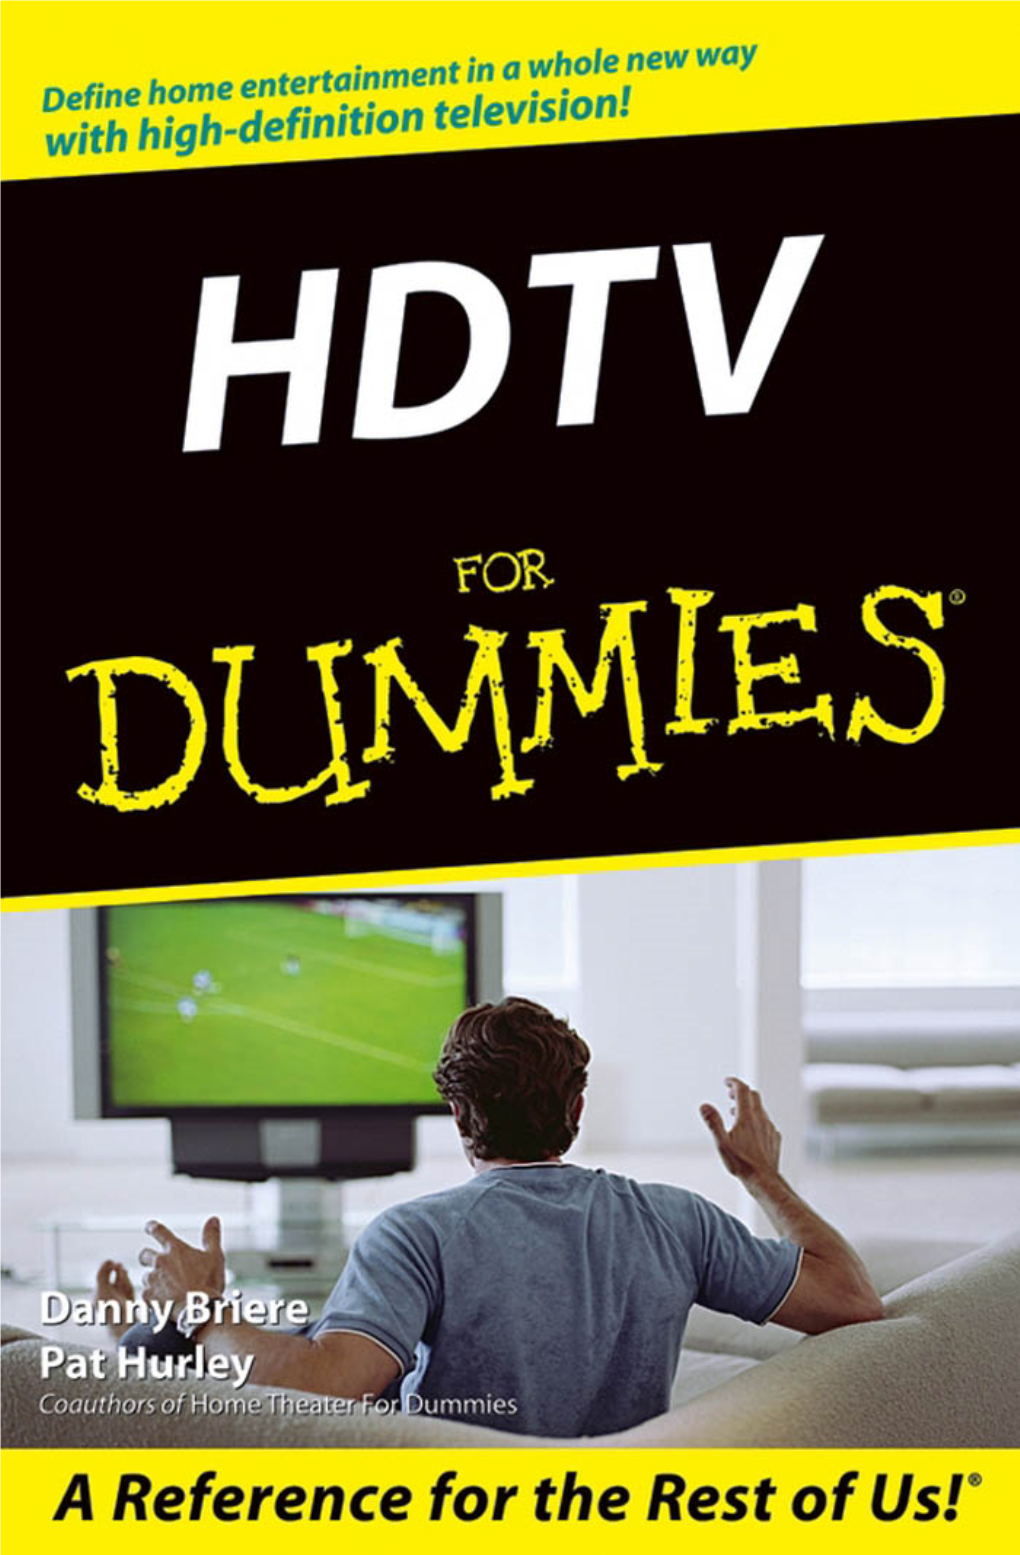 HDTV for Dummies.Pdf